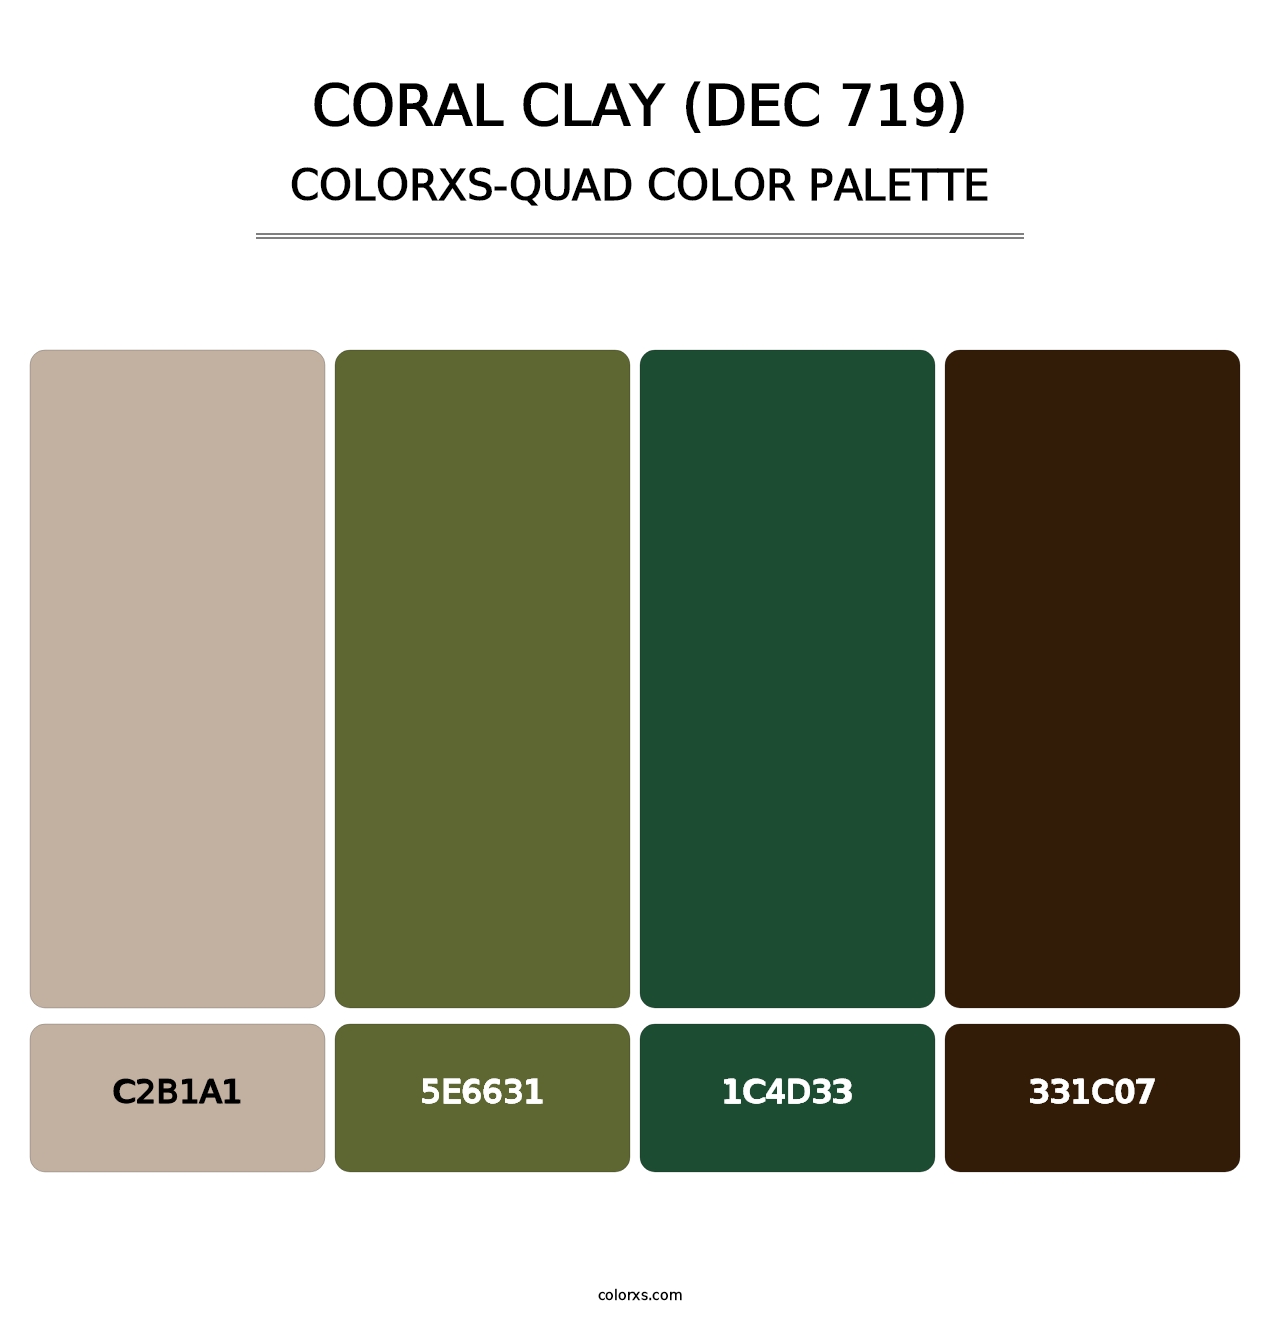 Coral Clay (DEC 719) - Colorxs Quad Palette